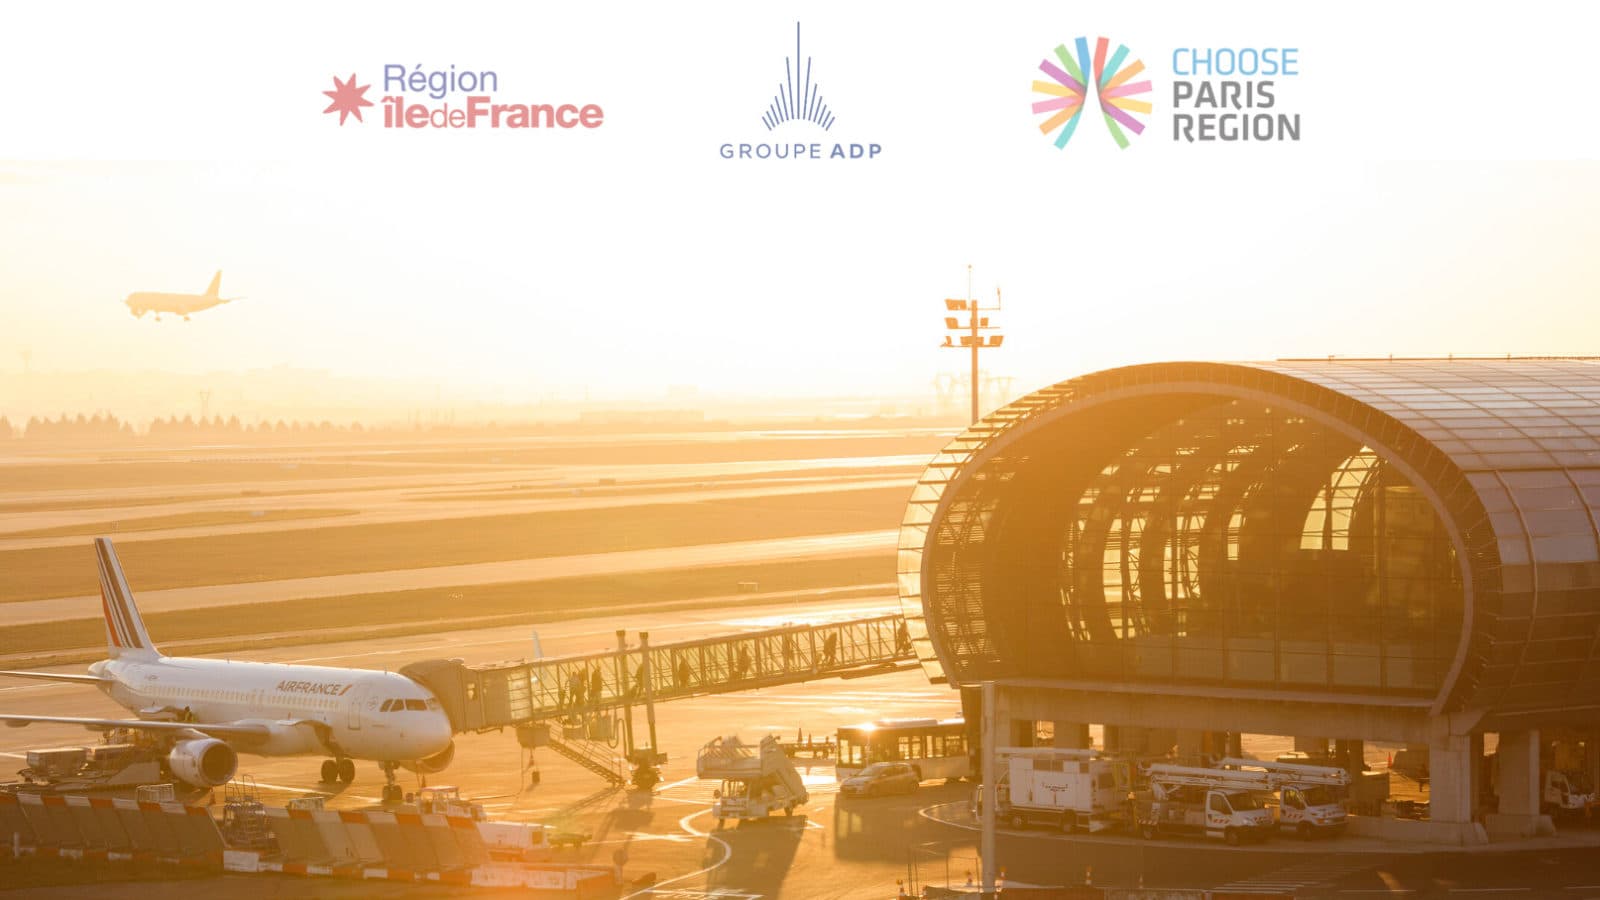 Gran final de la convocatoria Safe Travel Challenge   Groupe ADP   Choose Paris Region anuncian los ganadores